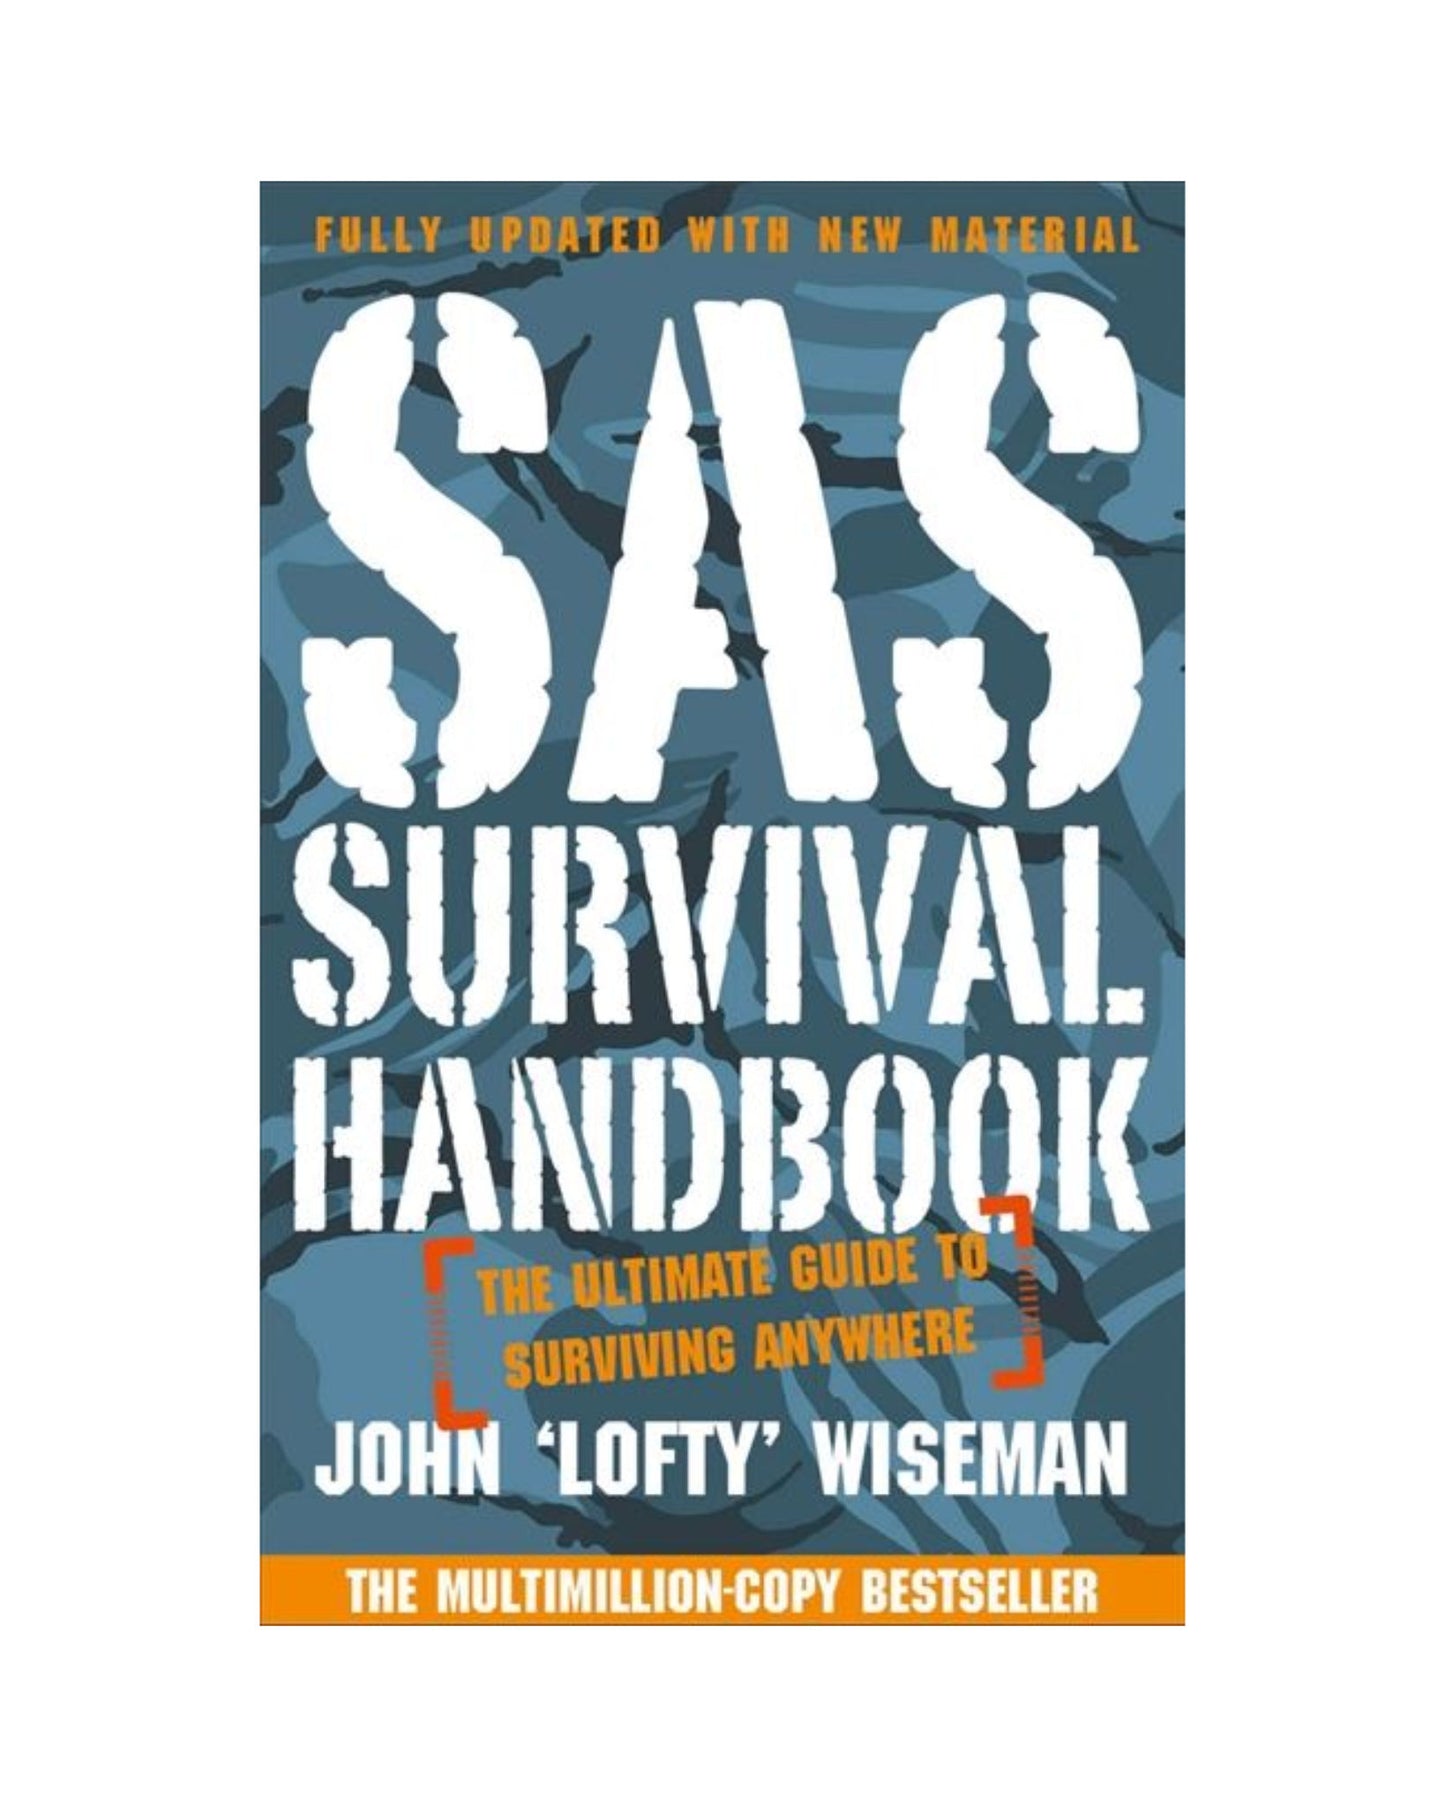 SAS Survival Handbook